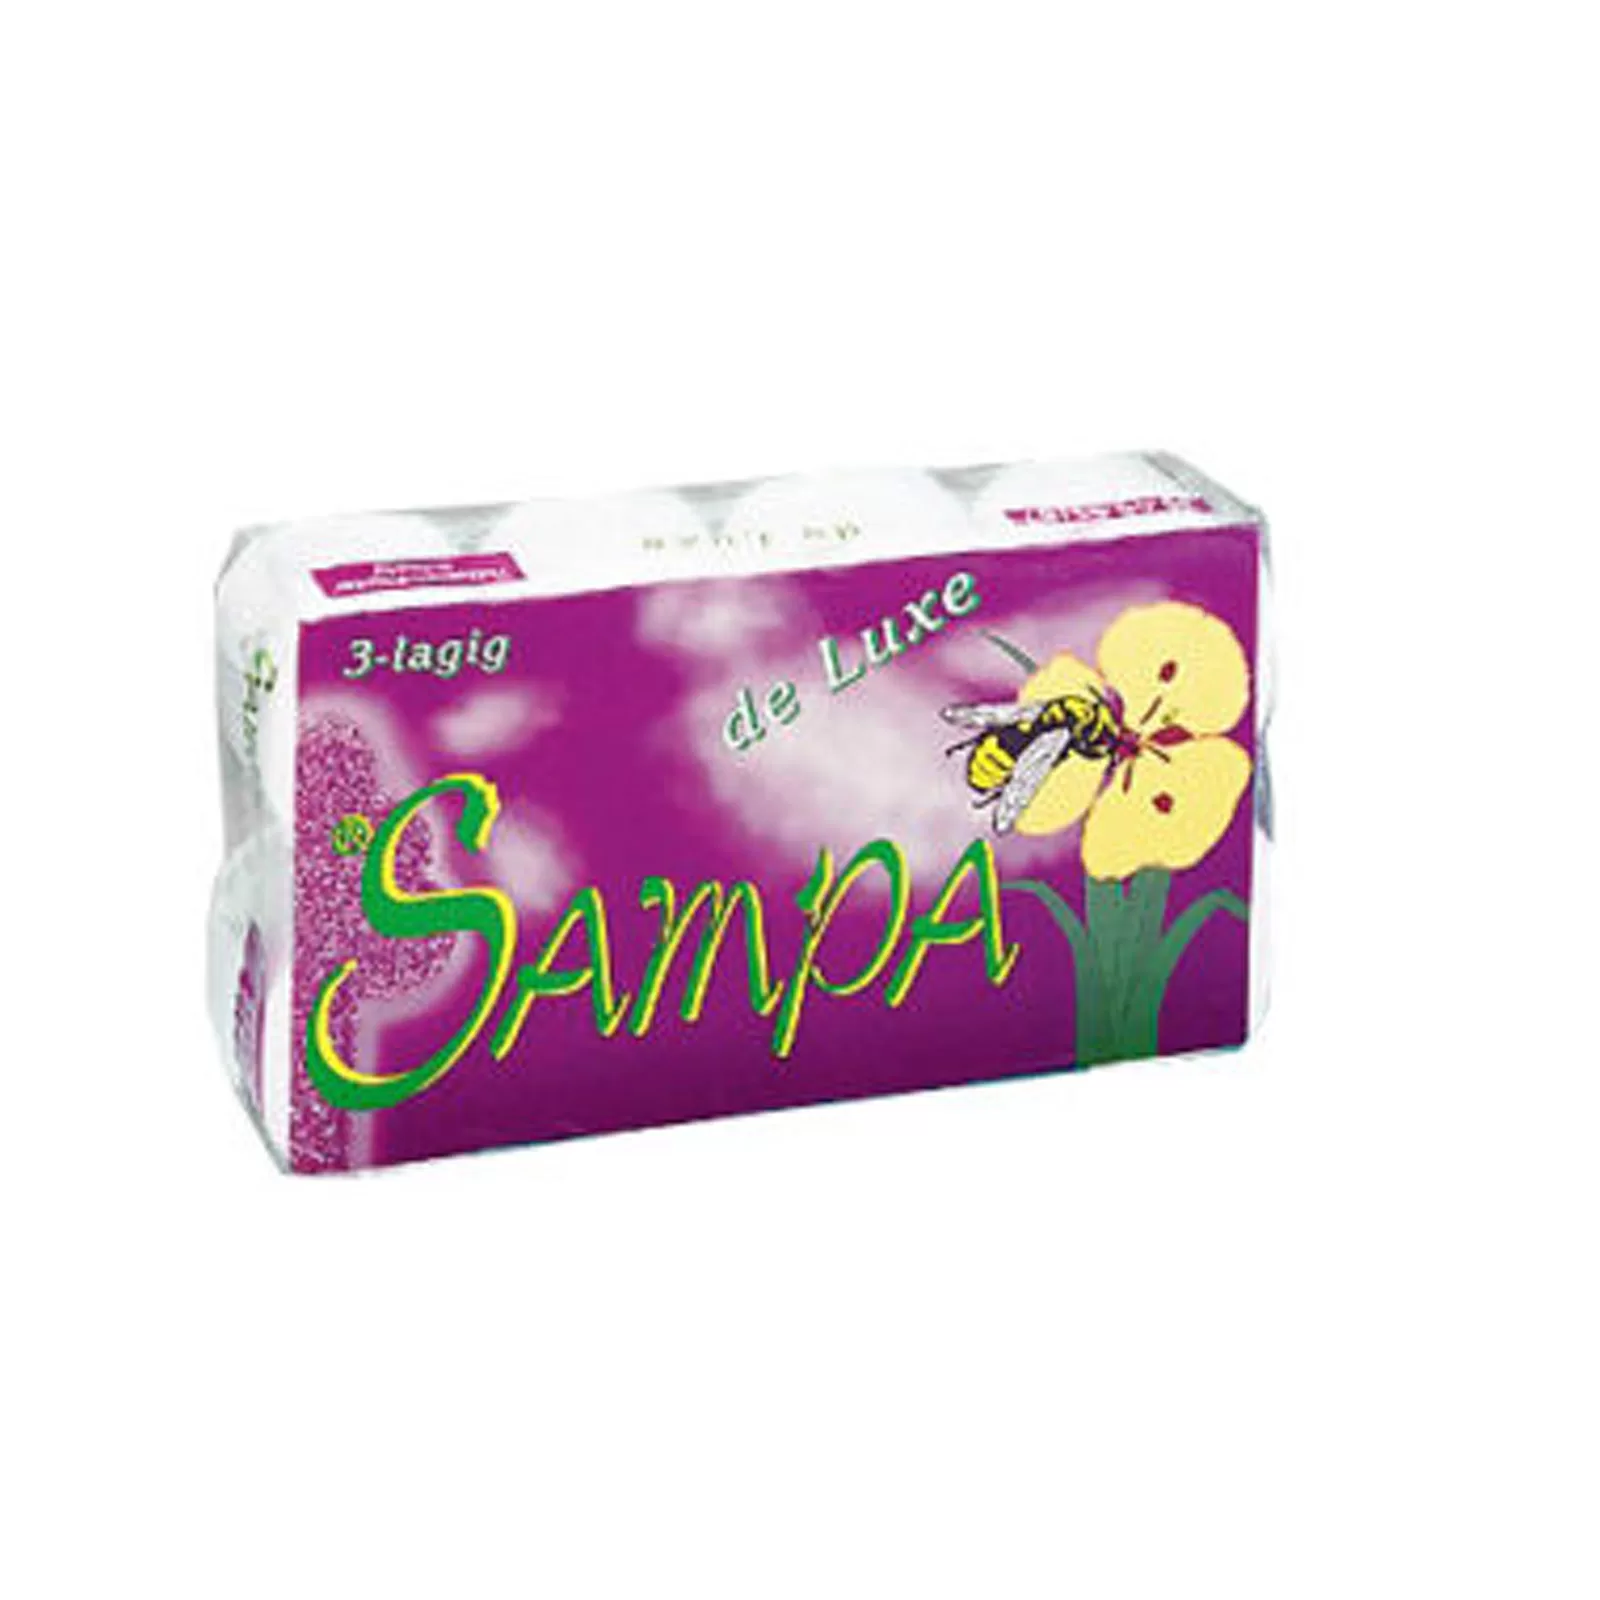 SAMPA violett Toilettenpapier Kleinrollen